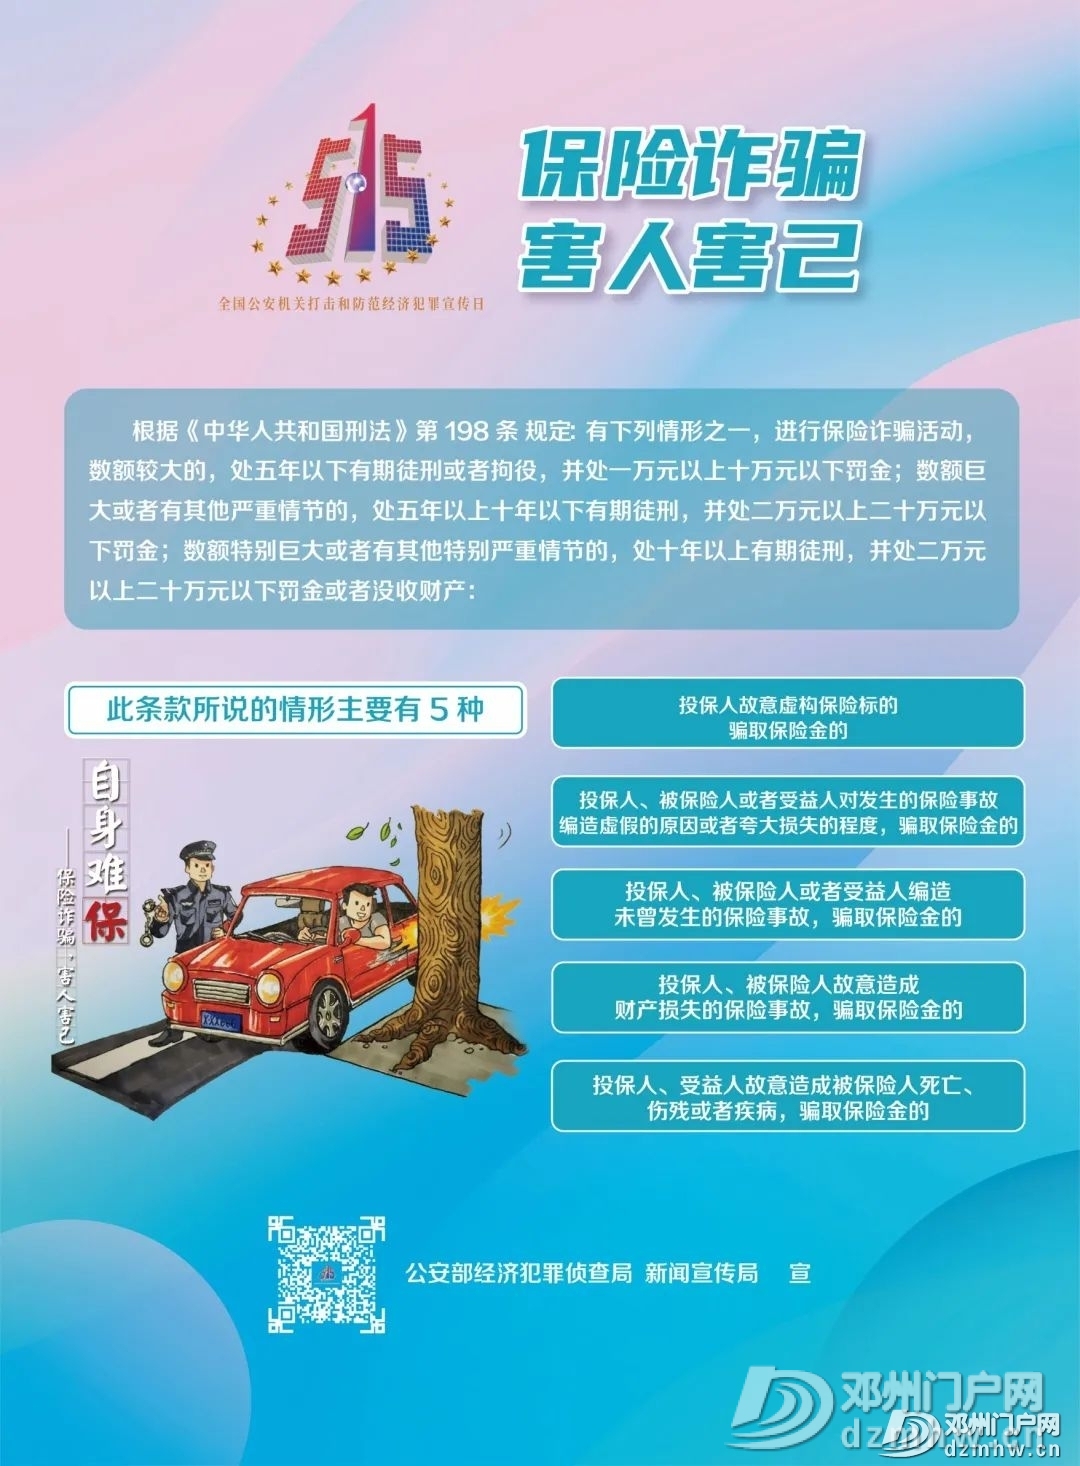 邓州市公安局举行“5.15打击和防范经济犯罪宣传日”宣传活动